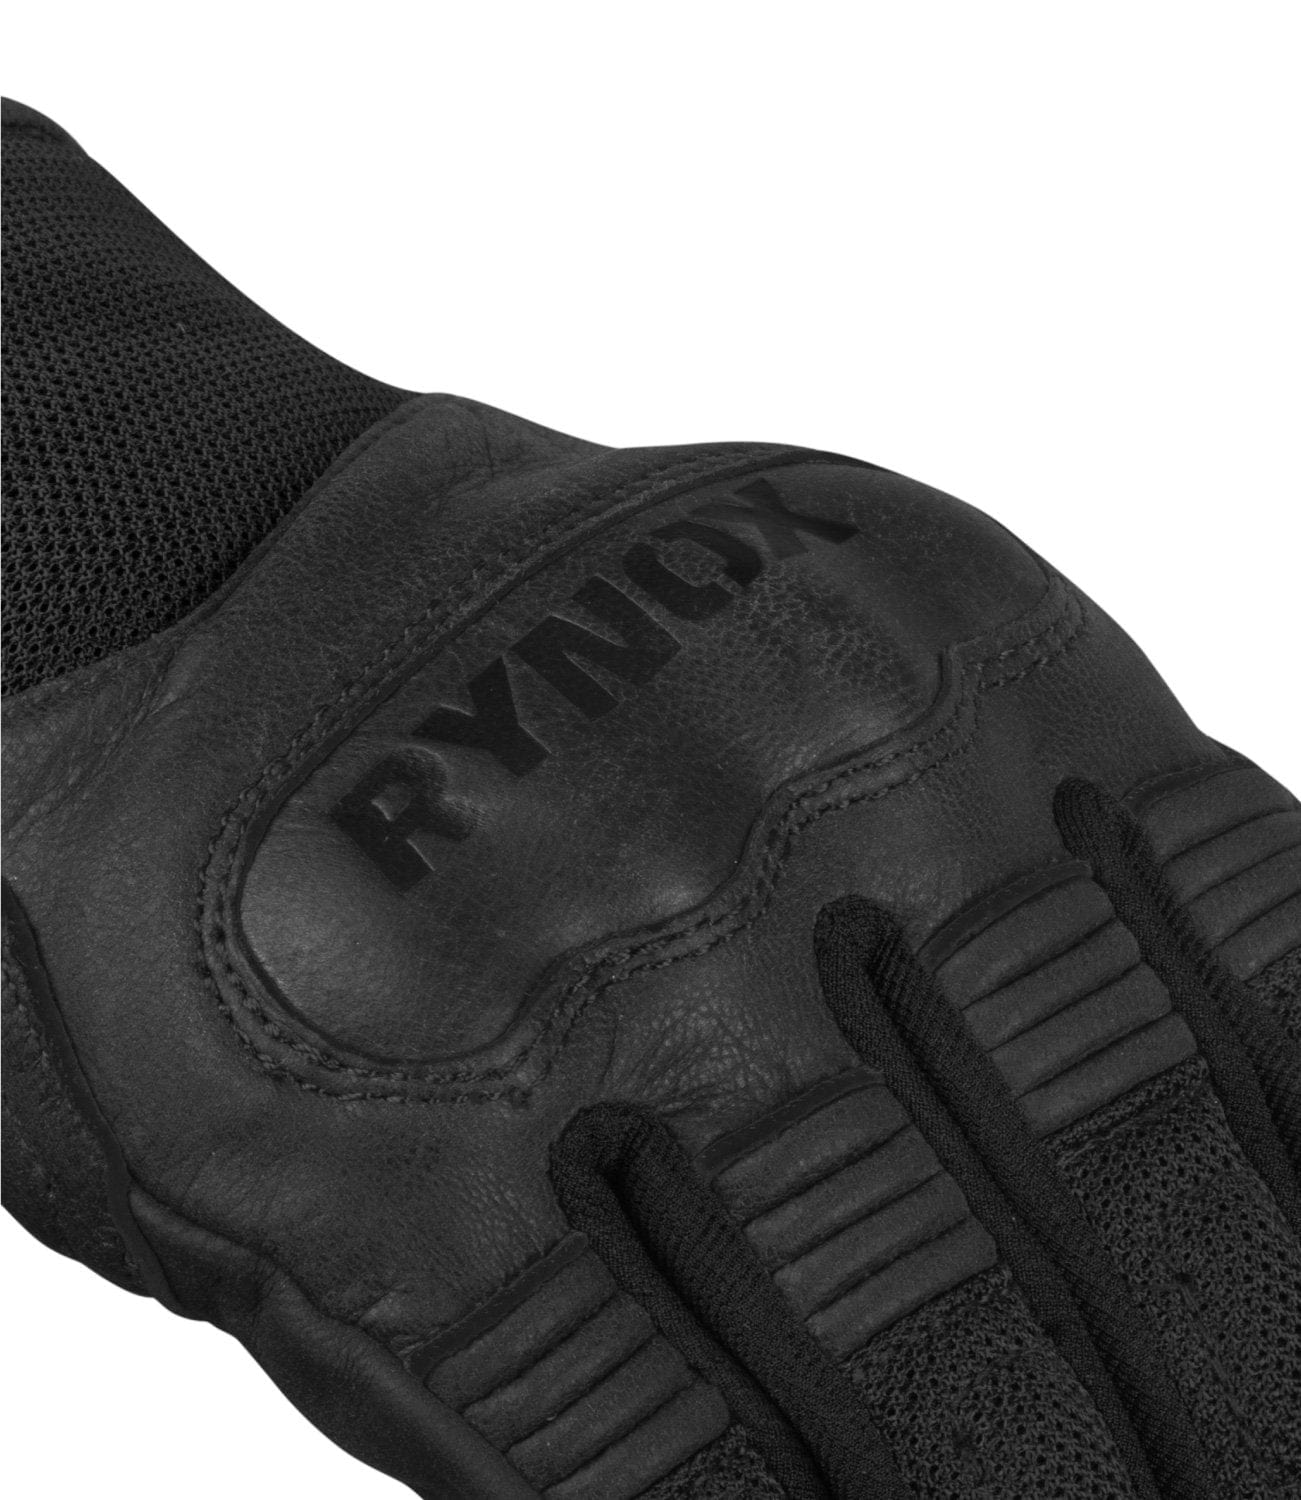 Rynox Urban Gloves Black - Destination Moto